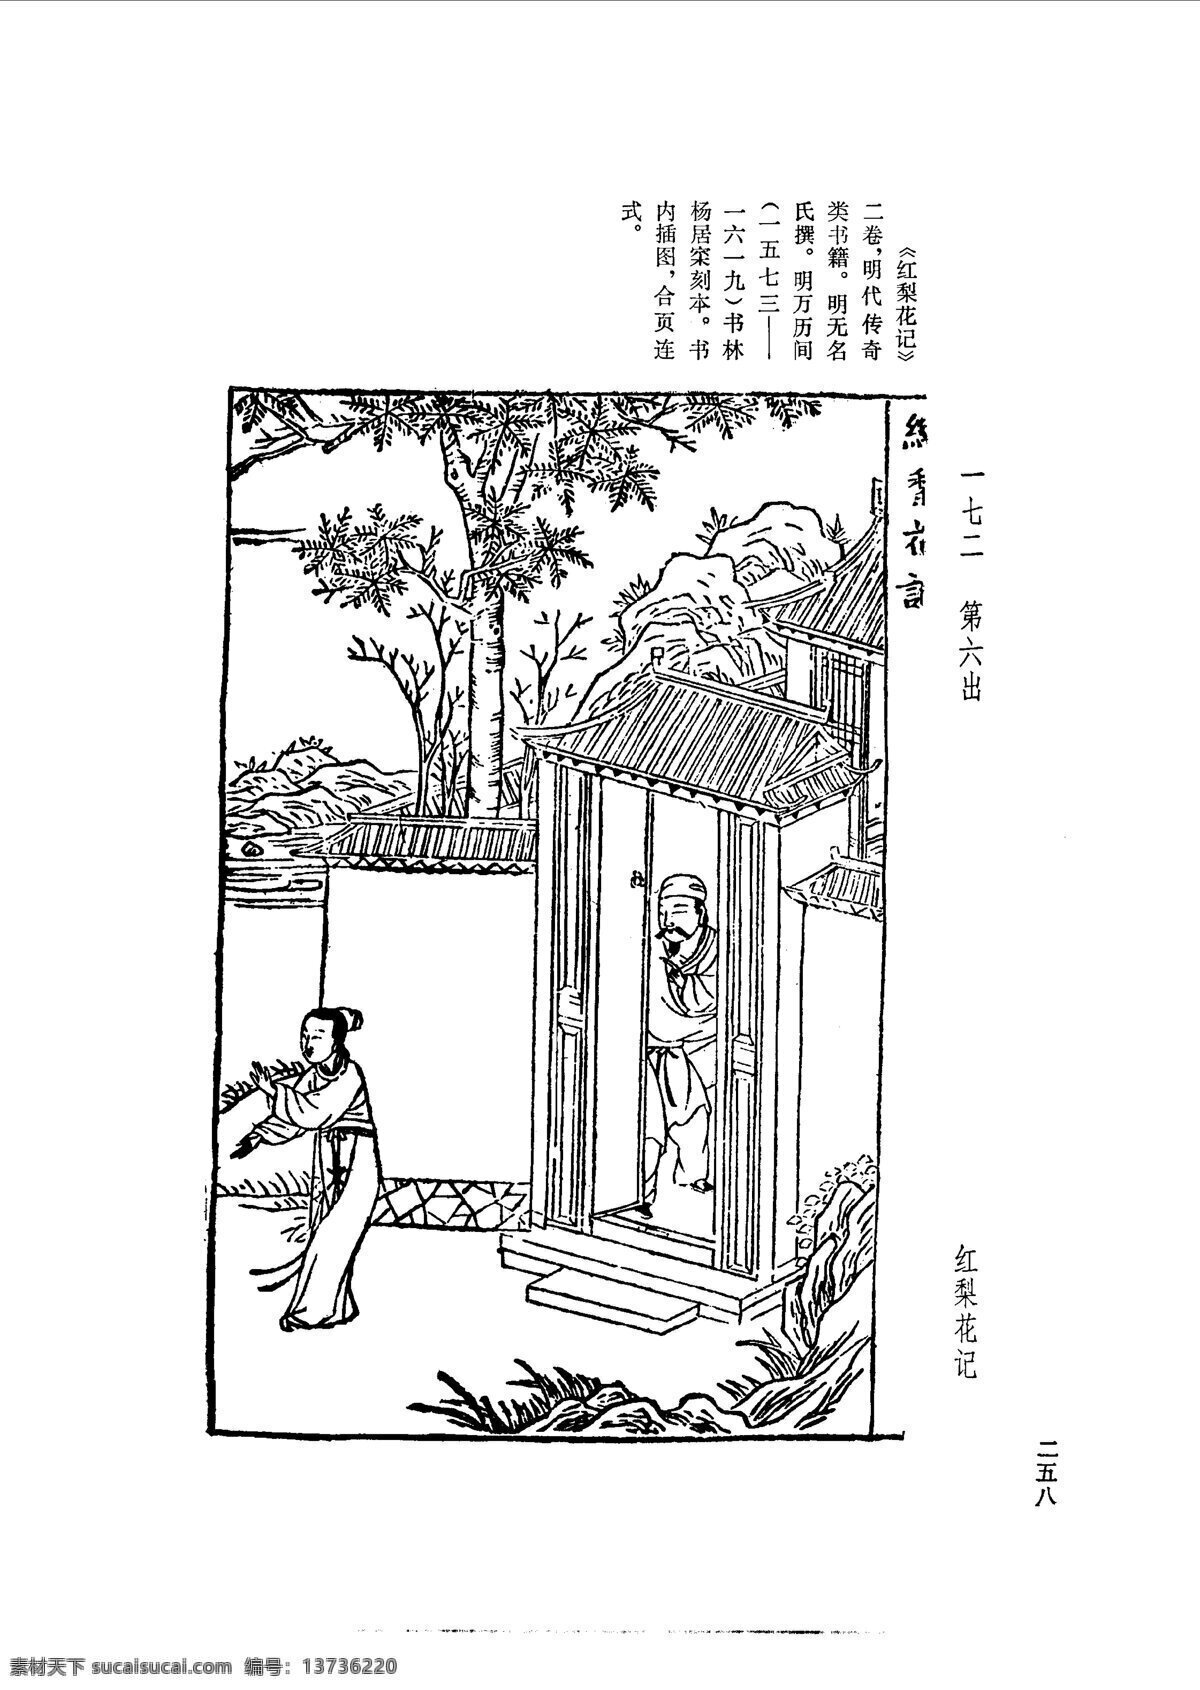 中国 古典文学 版画 选集 上 下册0286 设计素材 版画世界 书画美术 白色